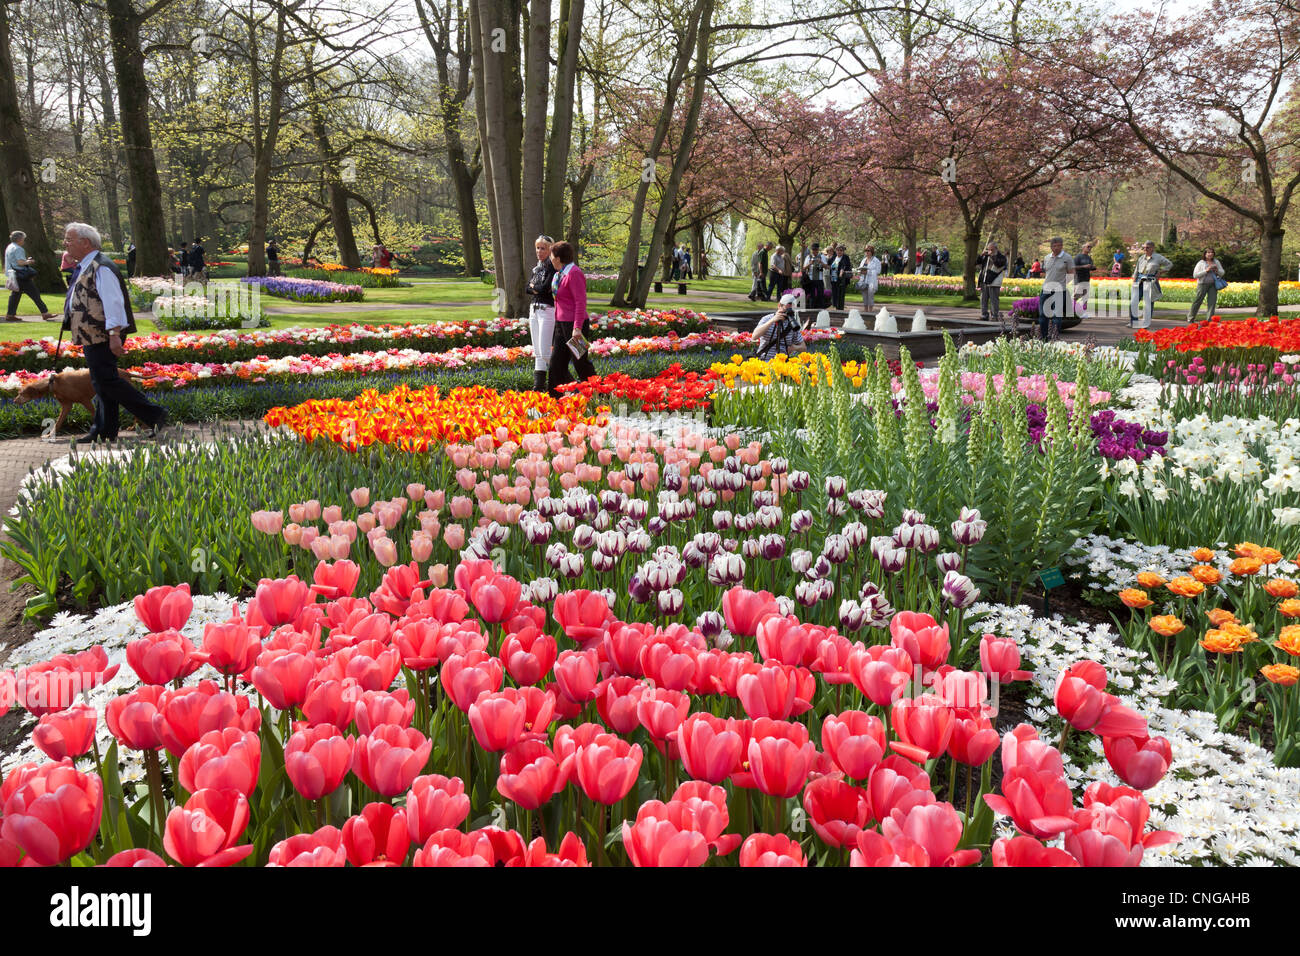 Holanda, Keukenhof, huerto con tulipanes, narcisos, Anemone blanda (Grecian Windflower) y los visitantes. Foto de stock